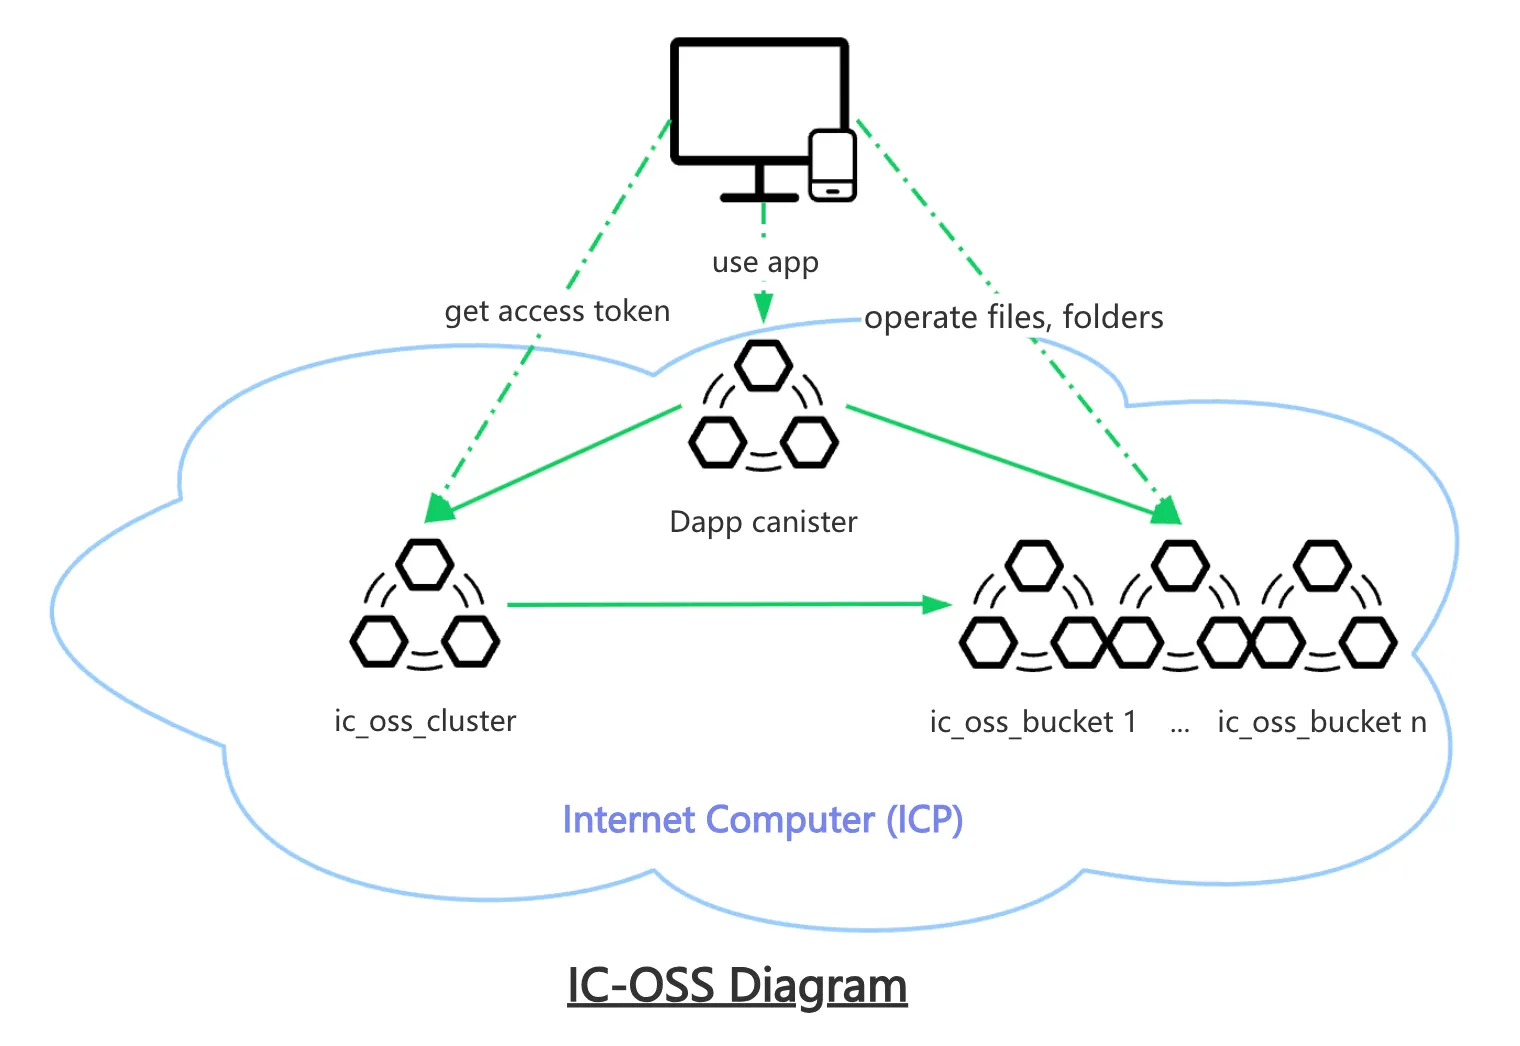 IC-OSS